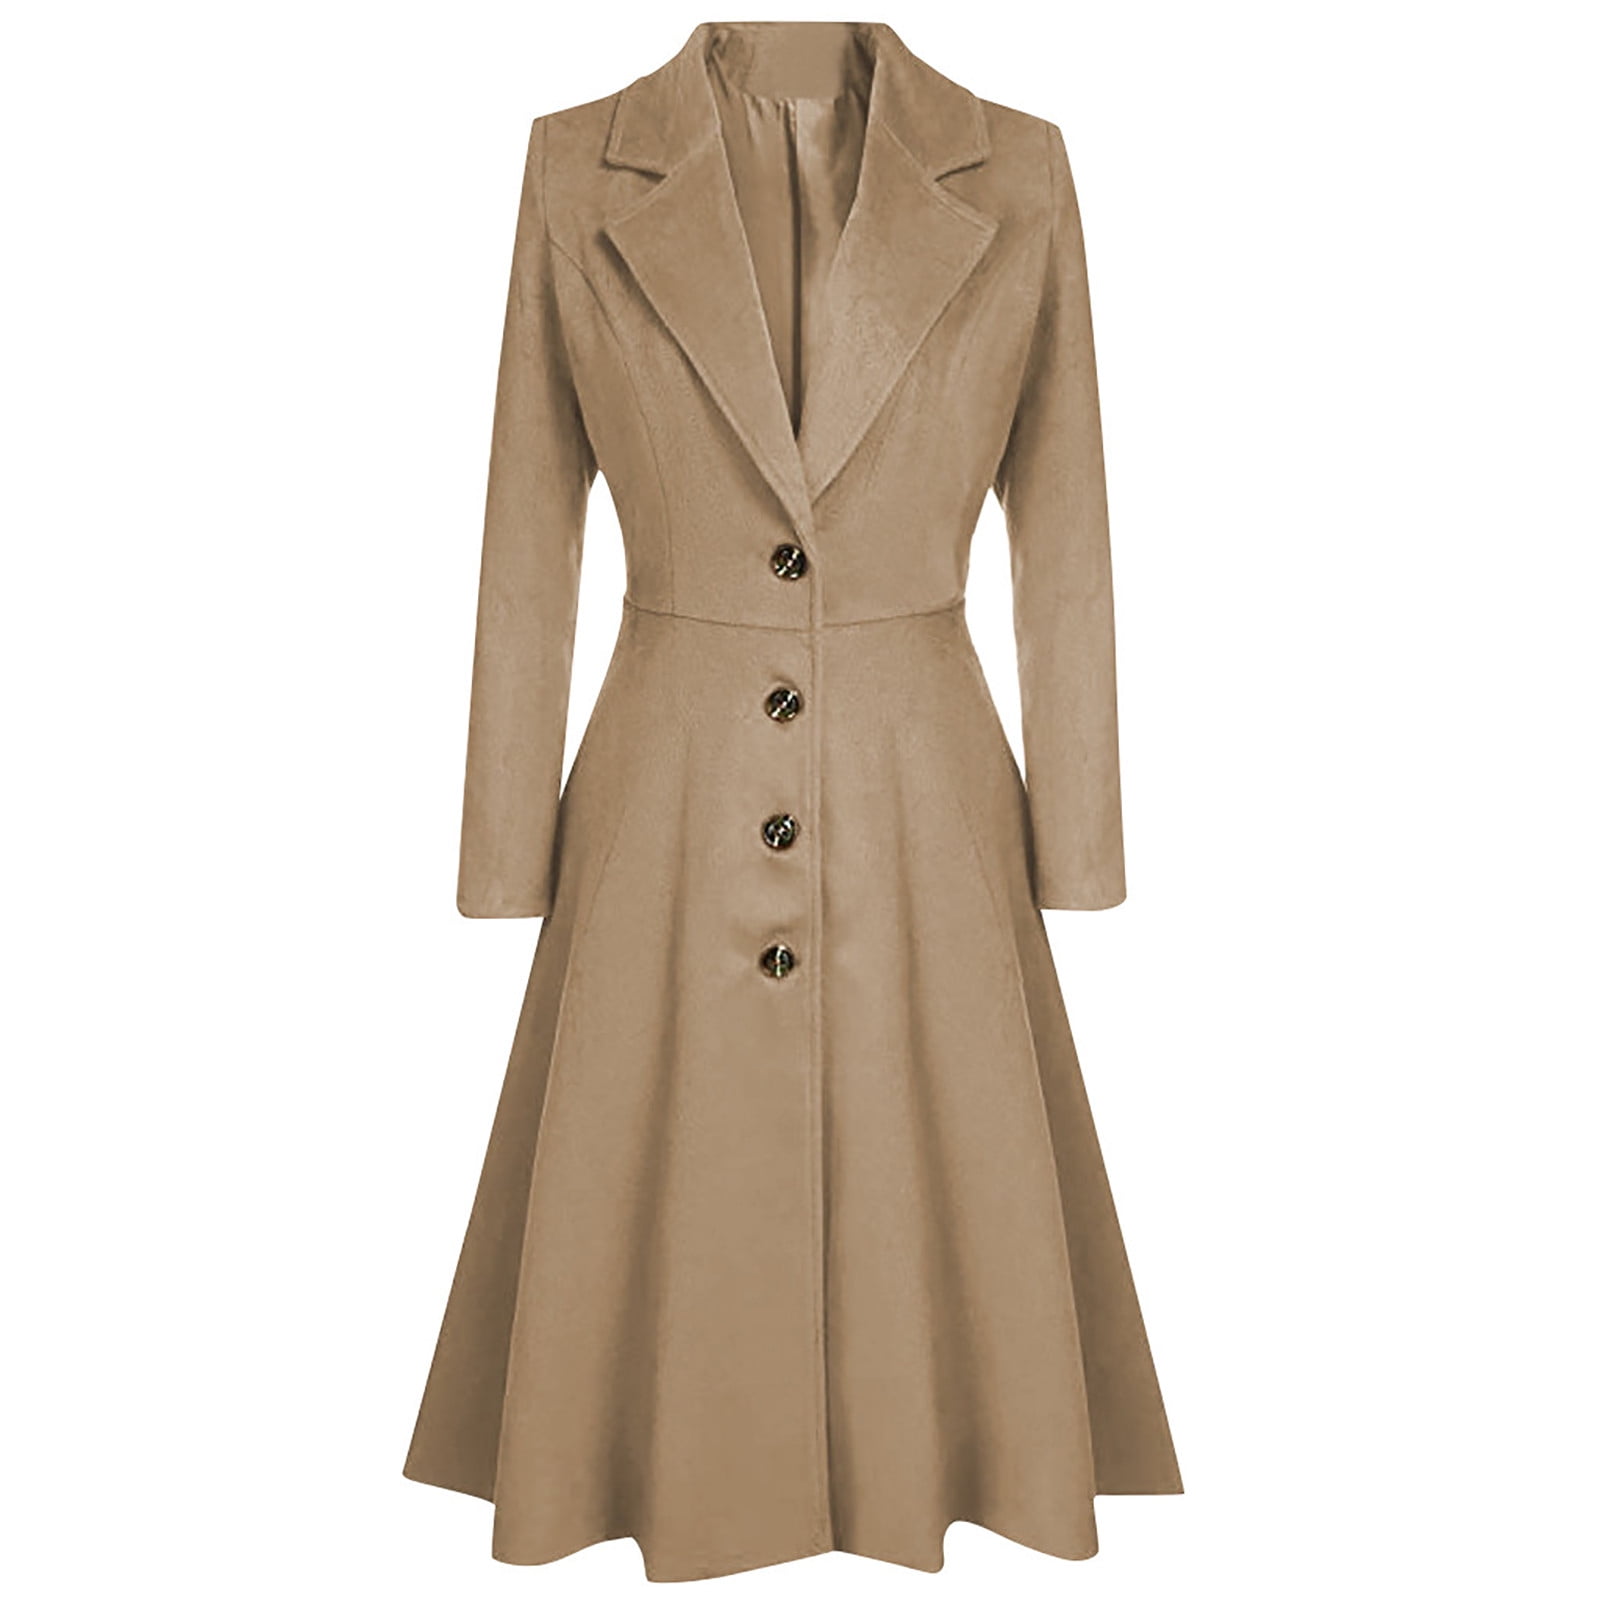 service 鍔 stemme symoid Womens Coats & Jackets- Winter Lapel Button Long Trench Coat Jacket  Ladies Overcoat Outwear Beige L - Walmart.com